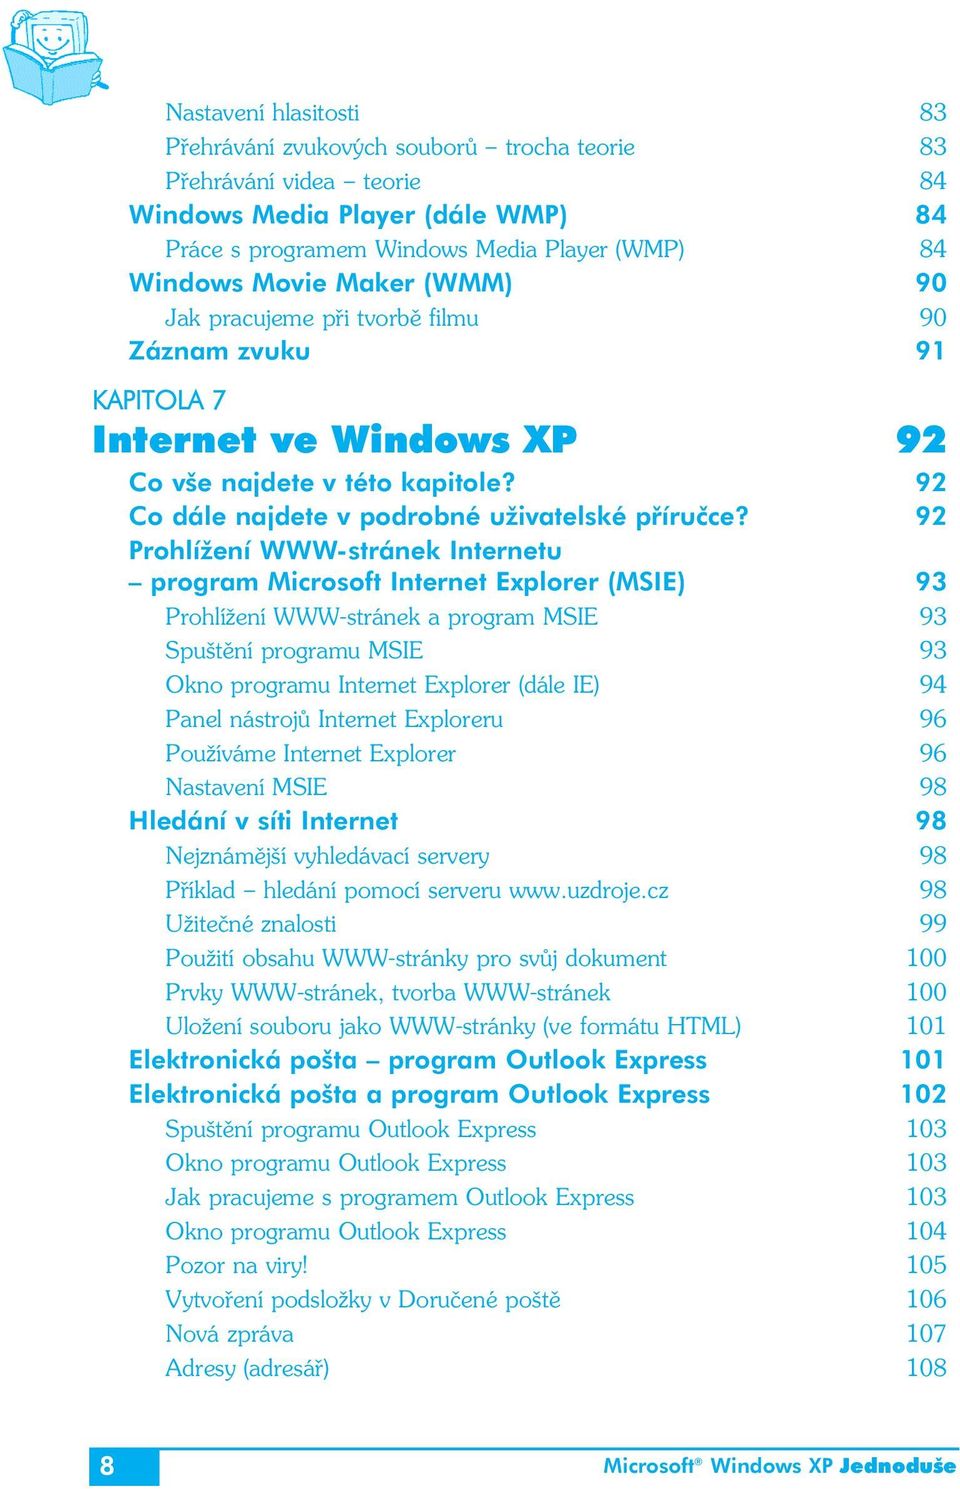 92 Prohlížení WWW-stránek Internetu program Microsoft Internet Explorer (MSIE) 93 Prohlížení WWW-stránek a program MSIE 93 Spuštění programu MSIE 93 Okno programu Internet Explorer (dále IE) 94 Panel